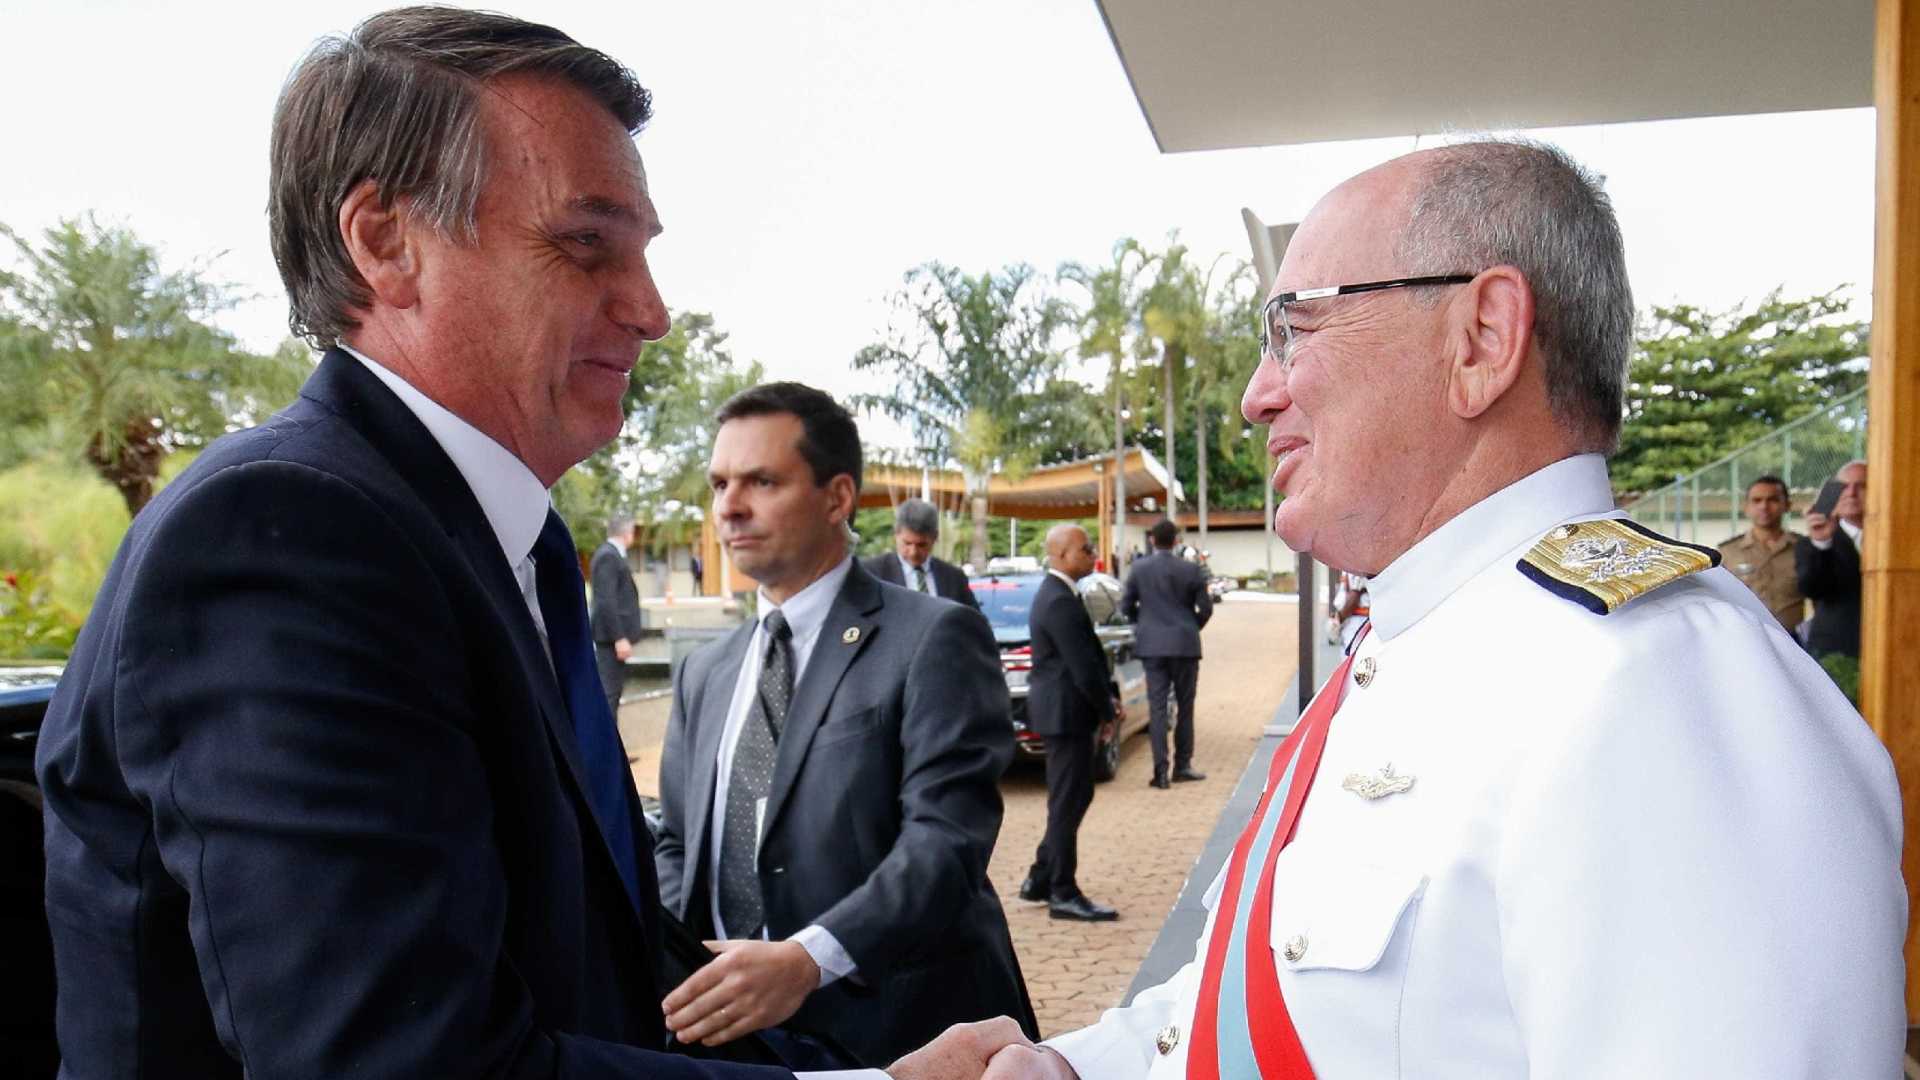 Almirante vai presidir conselho de administração da Petrobras